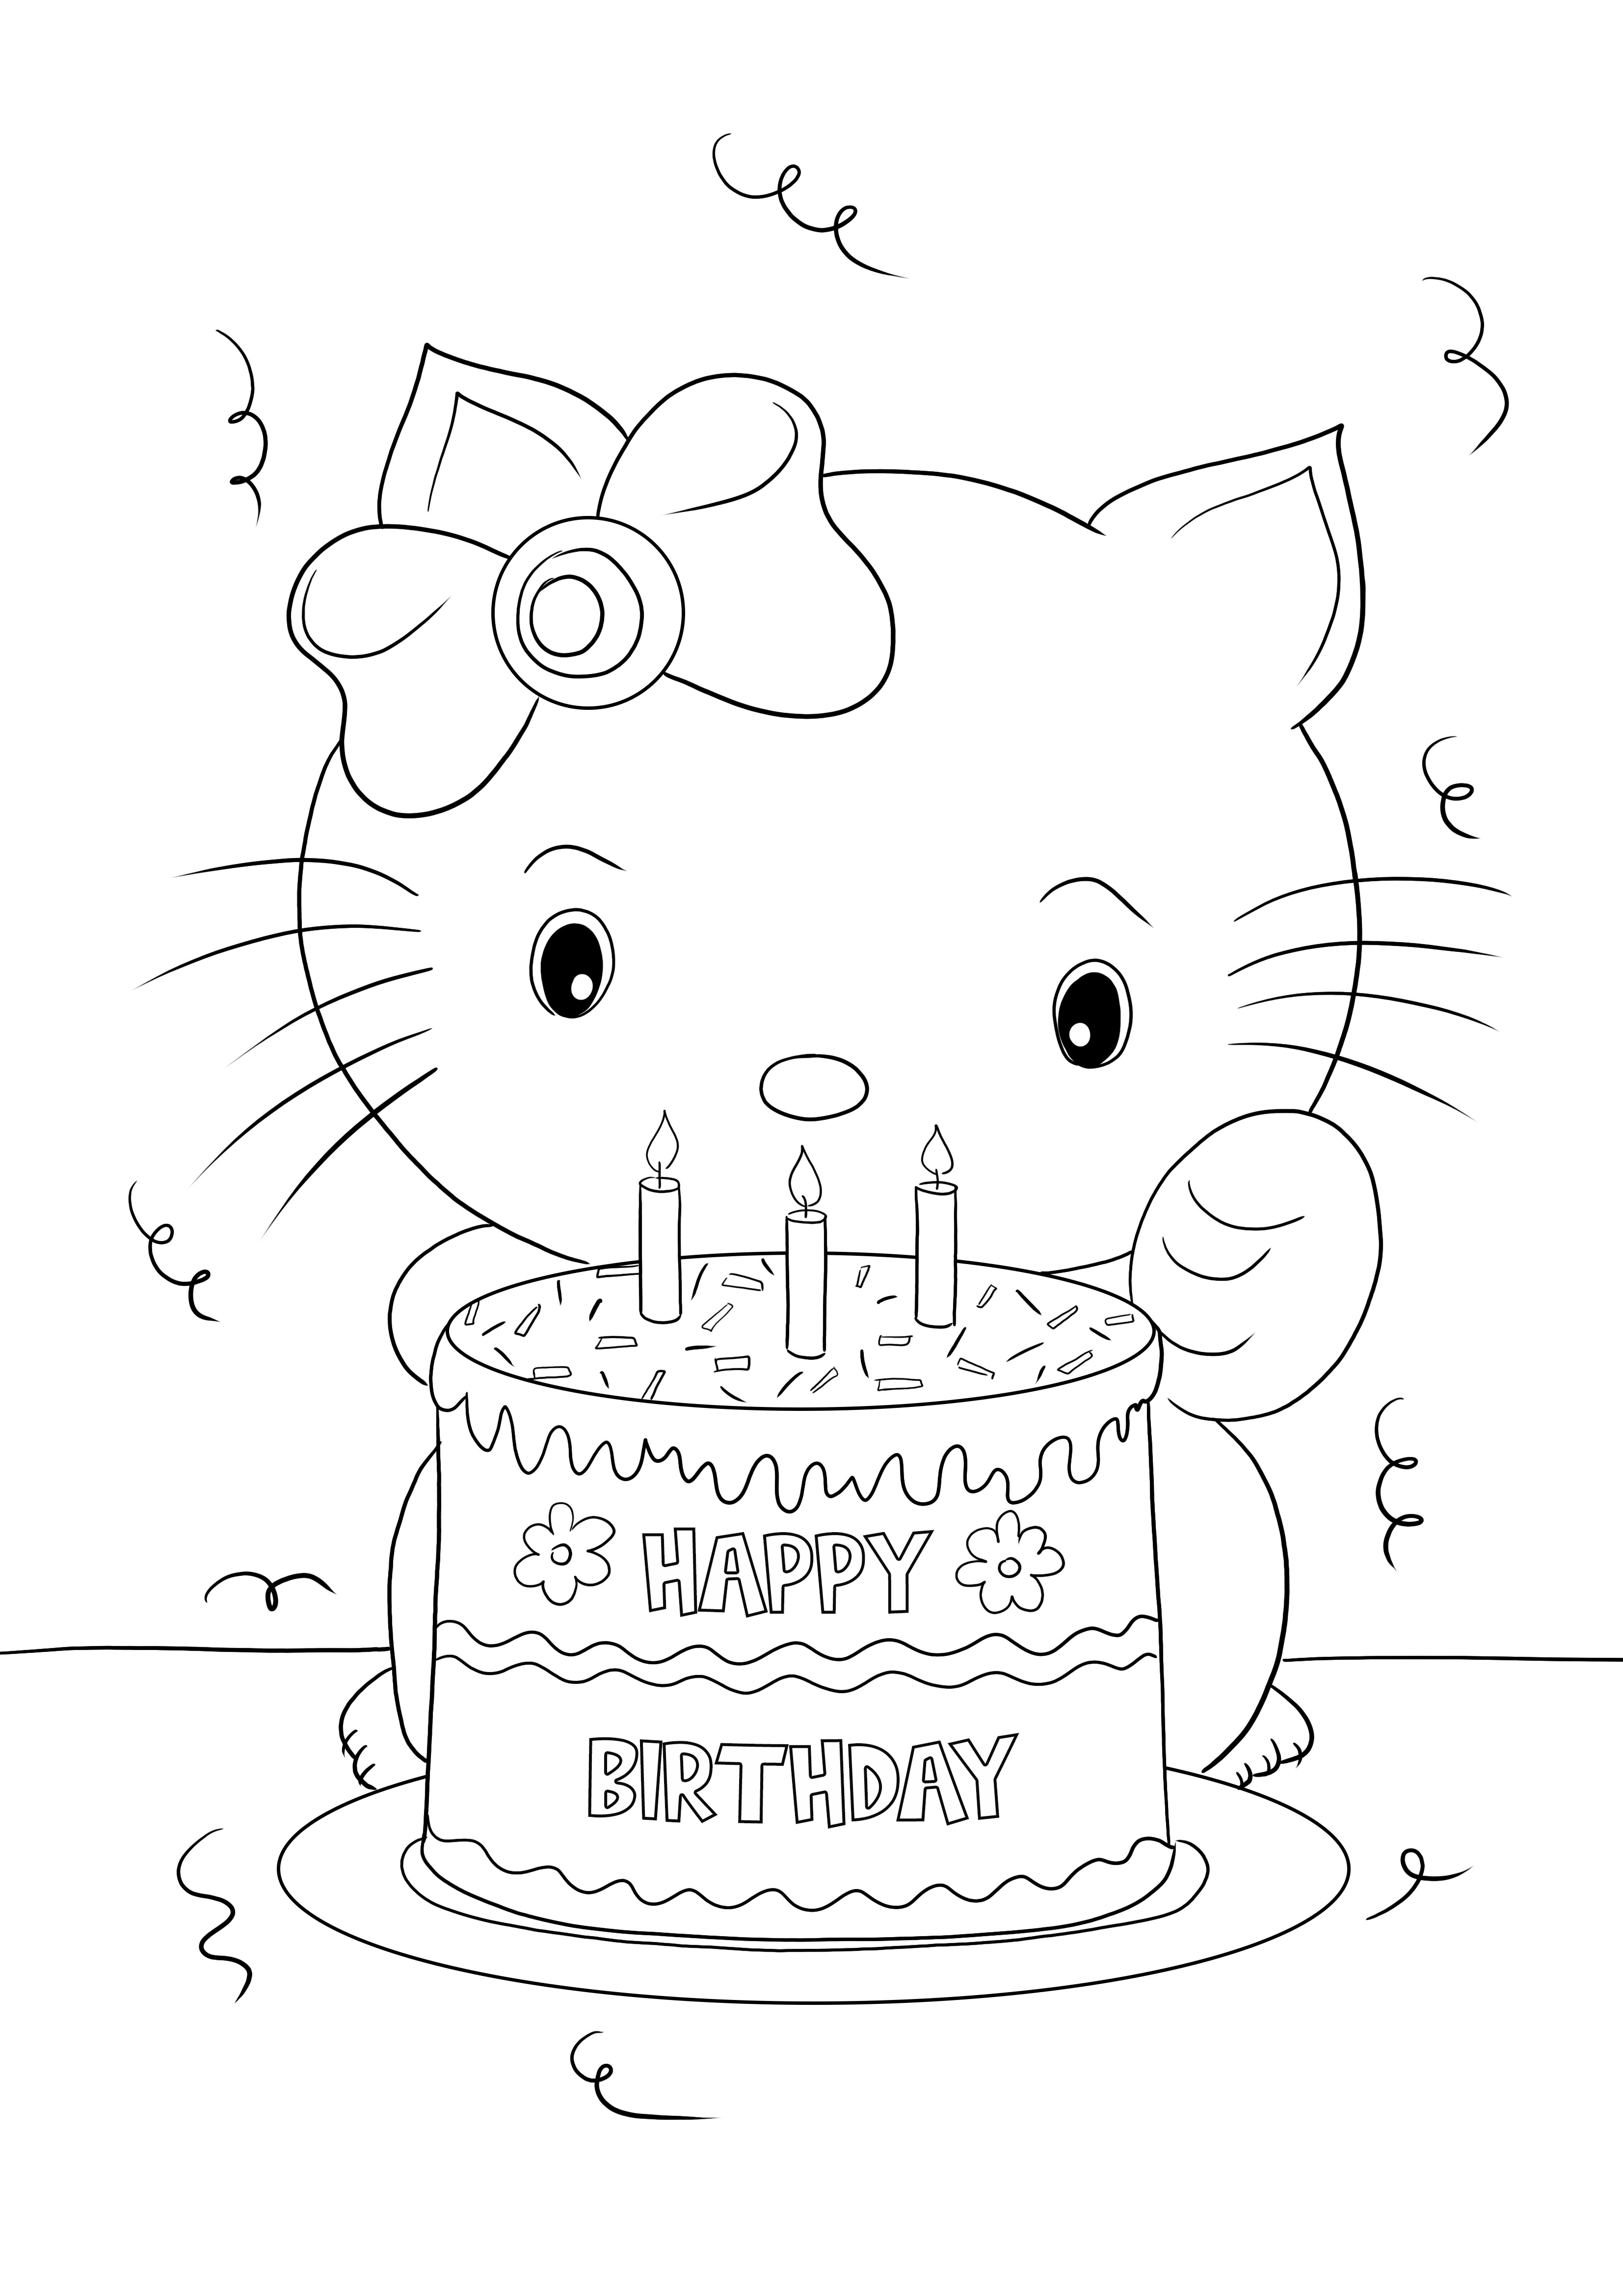 Kolorowanka Happy Birthday Hello Kitty do wydrukowania za darmo do kolorowania i nauki przez zabawę